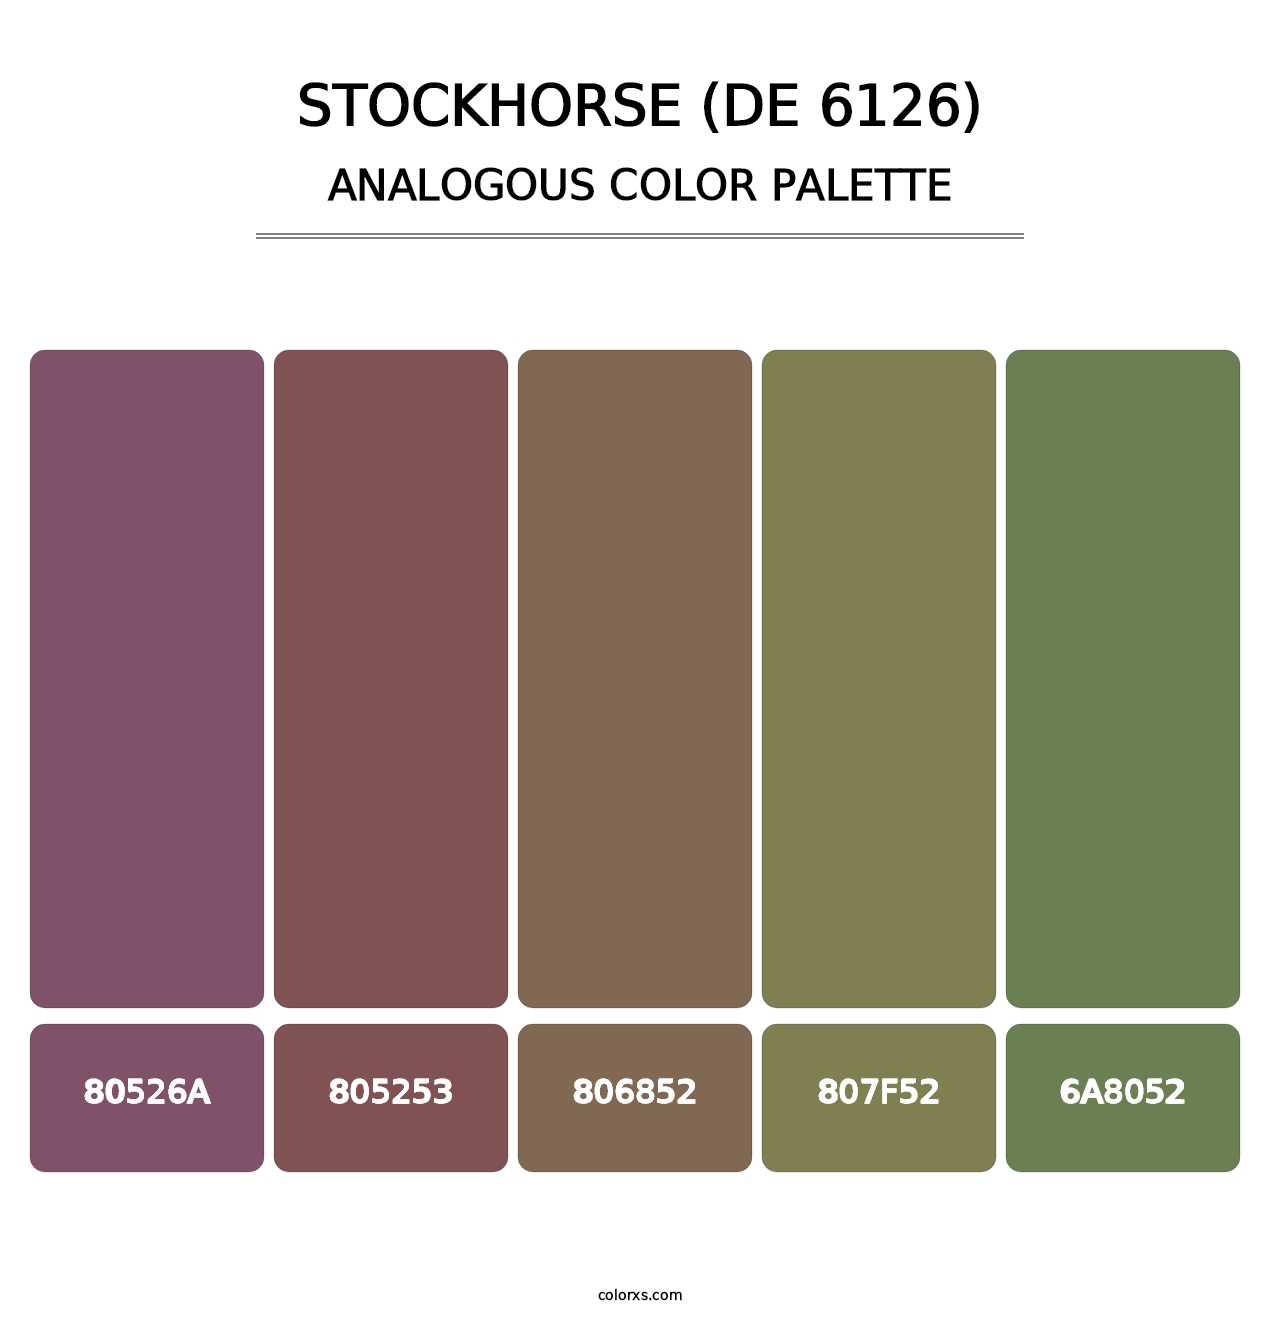 Stockhorse (DE 6126) - Analogous Color Palette